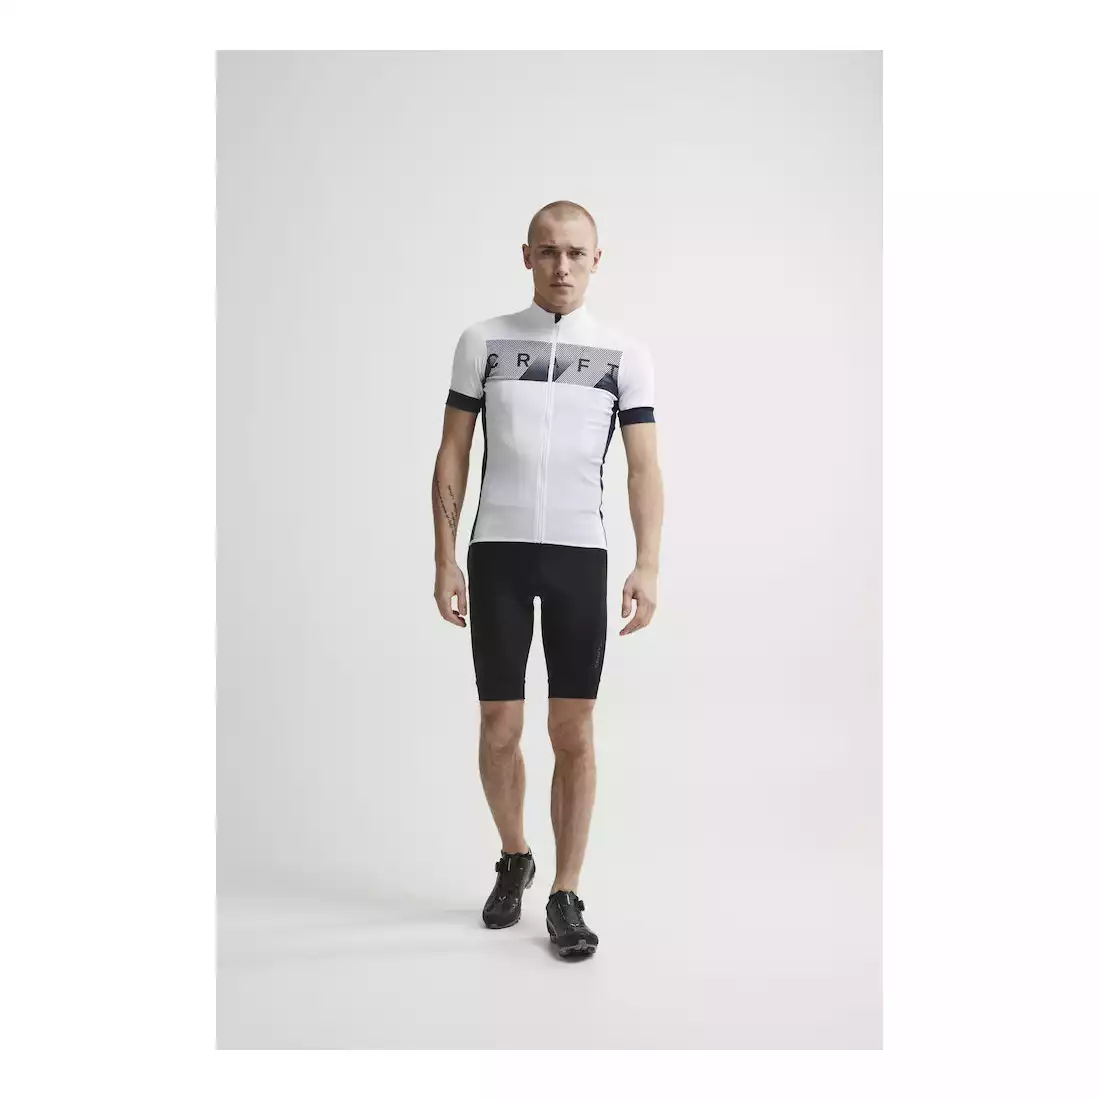 CRAFT REEL męska koszulka rowerowa, biała 1906096-900396